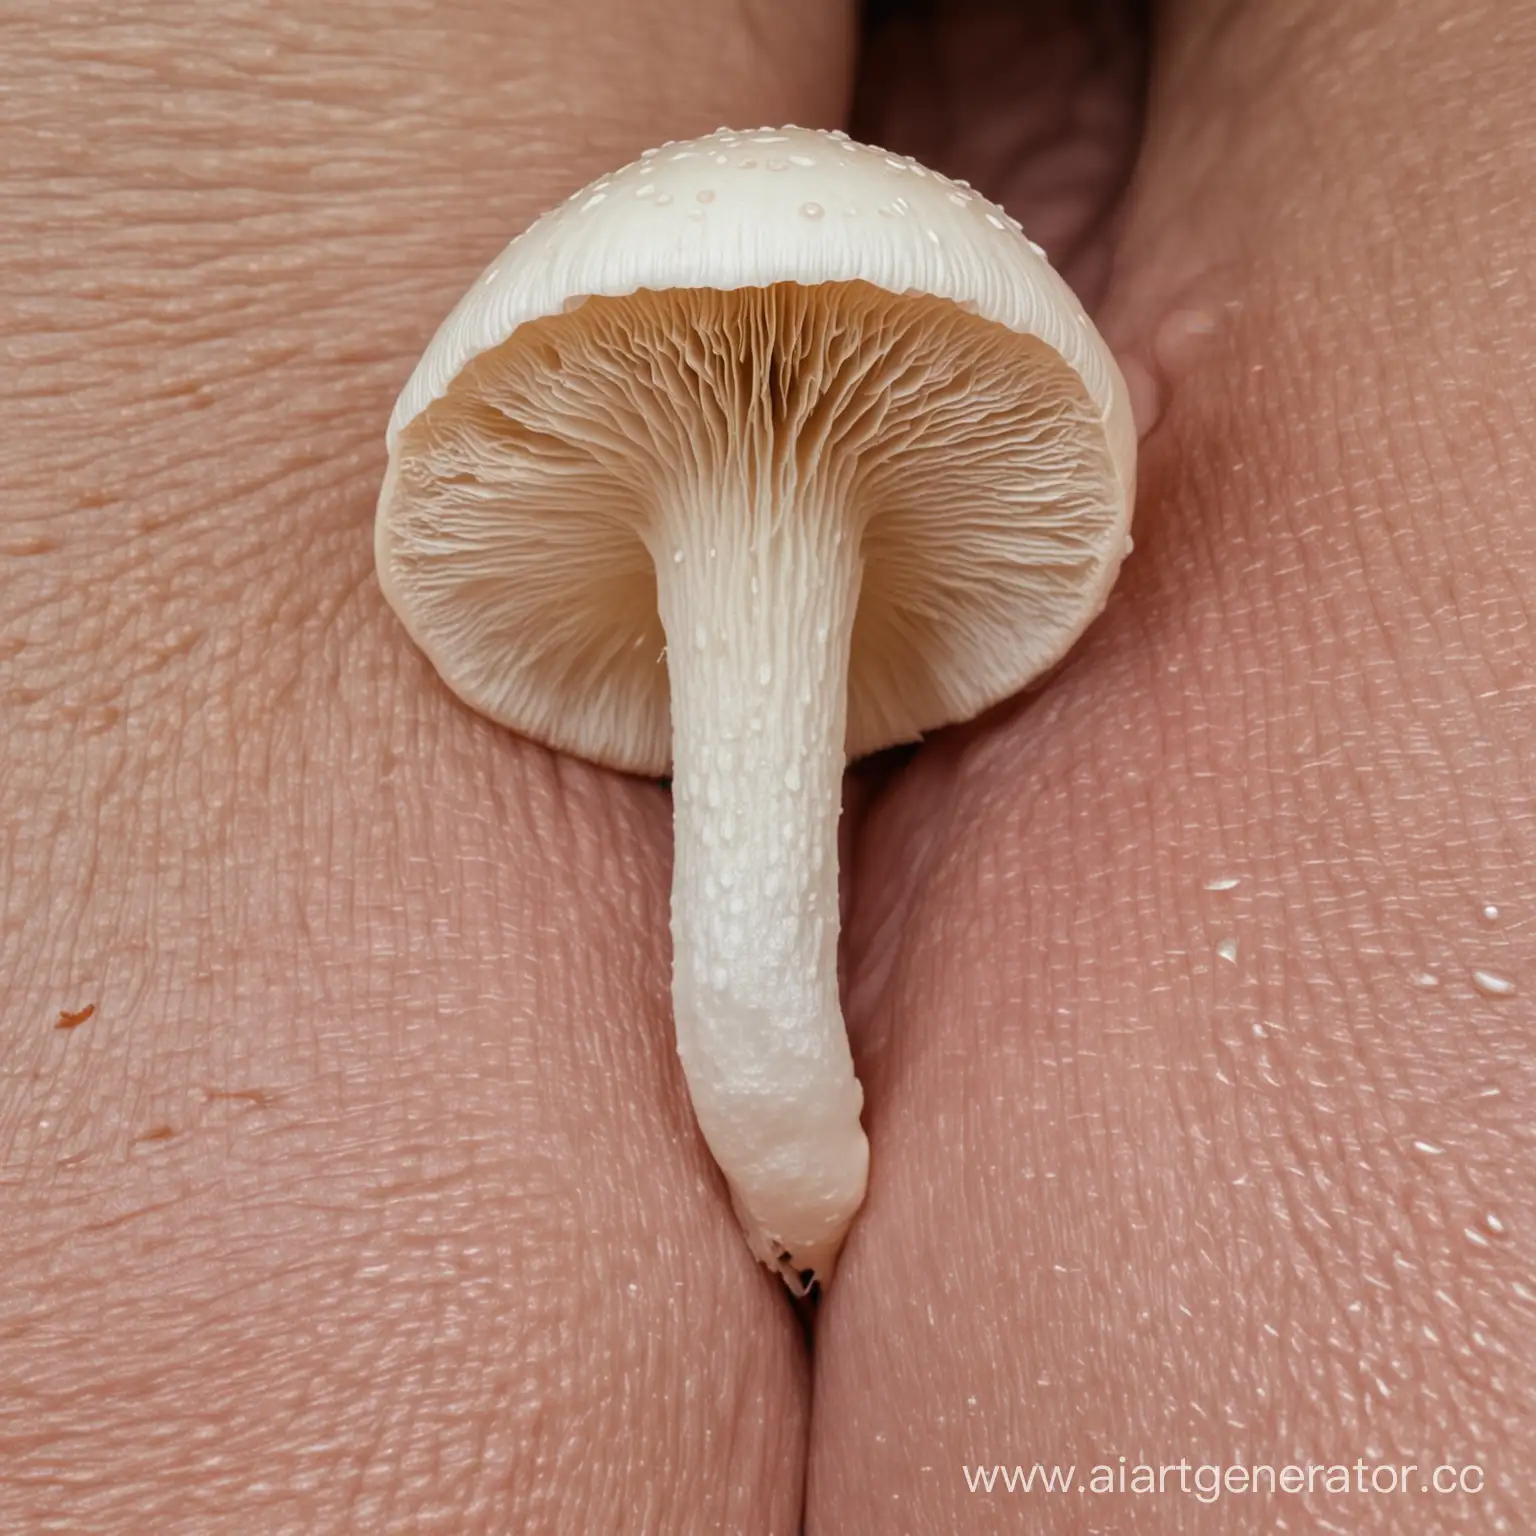 гриб белого цвета на лобке мужчины а внизы видно пенис